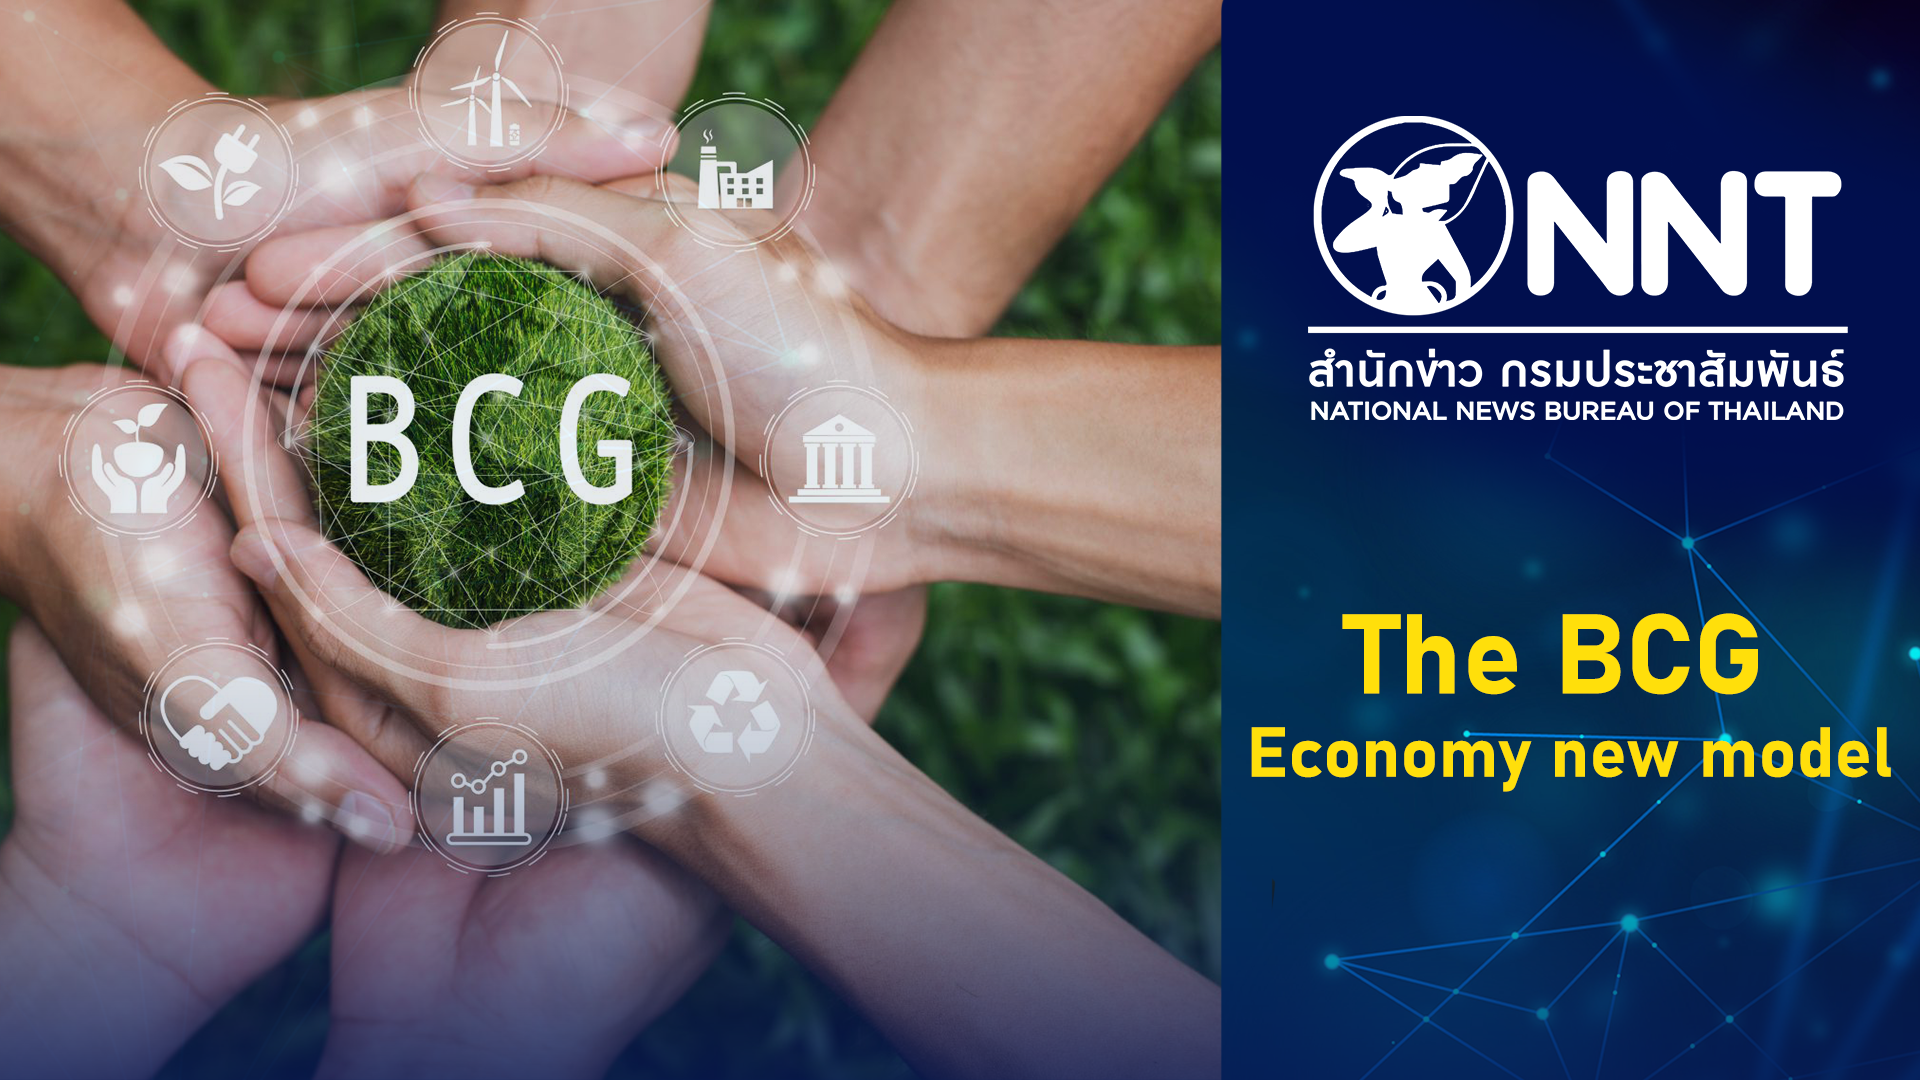 The BCG Economy new model